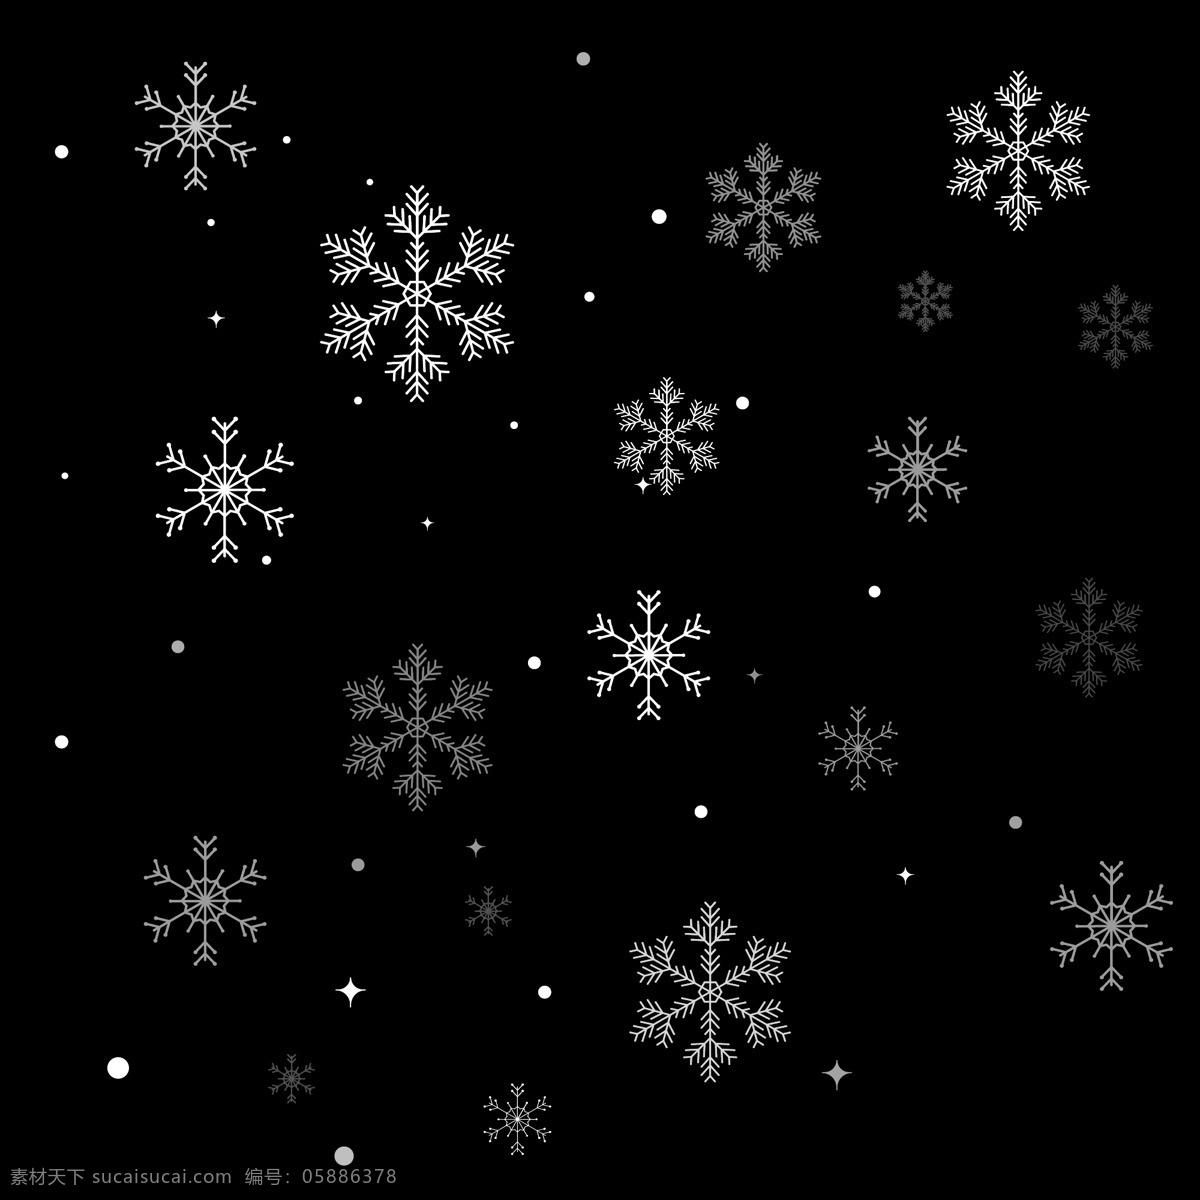 矢量 冬季 下雪 漂浮 雪花 图案 矢量图案 冬季素材 漂浮雪花 雪花图案 下雪素材